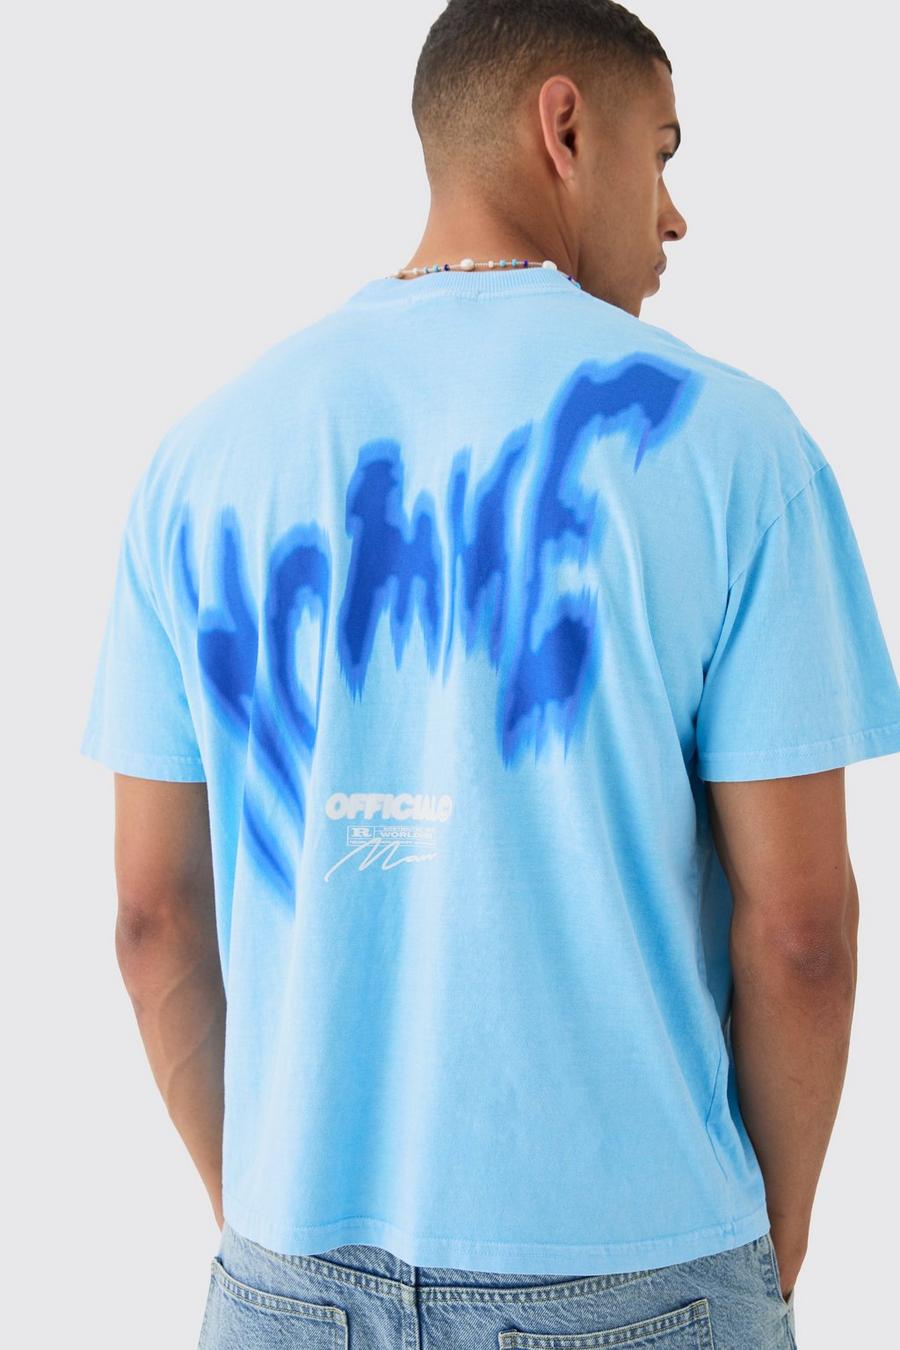 T-shirt oversize Homme slavata stile Graffiti, Blue